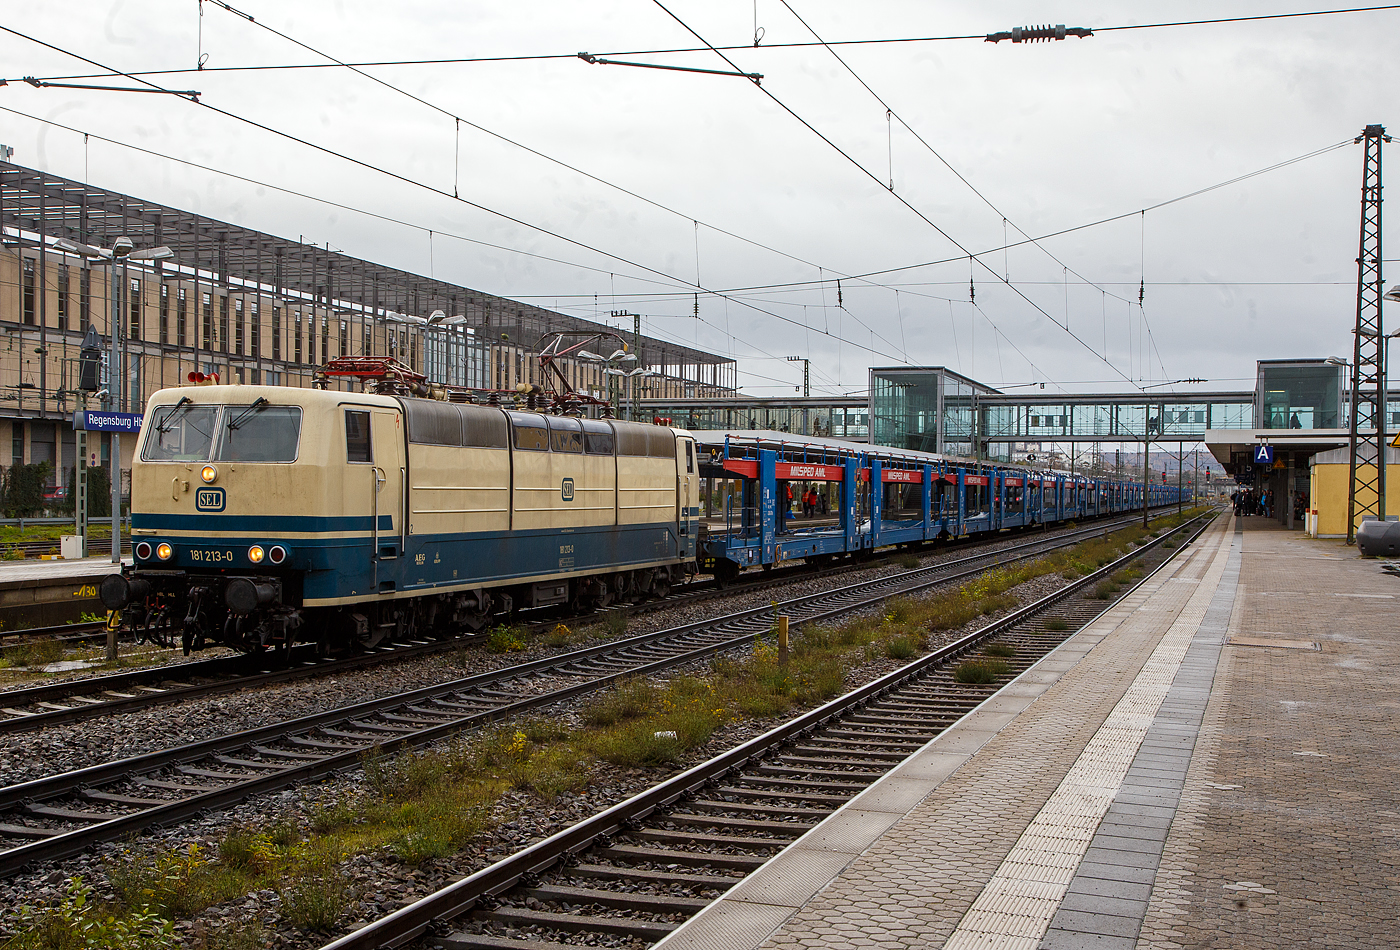 In ozeanblau/beige, die 181 213-0 (91 80 6181 213-0 D-SEL), ex DB 181 213-0 „Saar“ fährt am 24.11.2022 mit einem leeren Autotransportzug der serbischen Milsped AML (2 x2 achsige Wageneinheiten der Gattung Laaers, eingestellt mit B-MIL in Belgien) durch den Hauptbahnhof Regensburg, vermutlich in Richtung Straubing bzw. Passau.

Die Lok wurde 1974 bei Krupp in Essen unter der Fabriknummer 5279 gebaut, der elektrische Teil bei AEG unter der Fabriknummer 8850. Sie hat die Zulassung für Deutschland / Frankreich / Luxemburg. Im Jahr 2020 wurde sie an die Martin Schlünß Eisenbahnlogistik in Wankendorf verkauft. Sie hat nun wieder ein Farbkleid in ozeanblau/beige.
